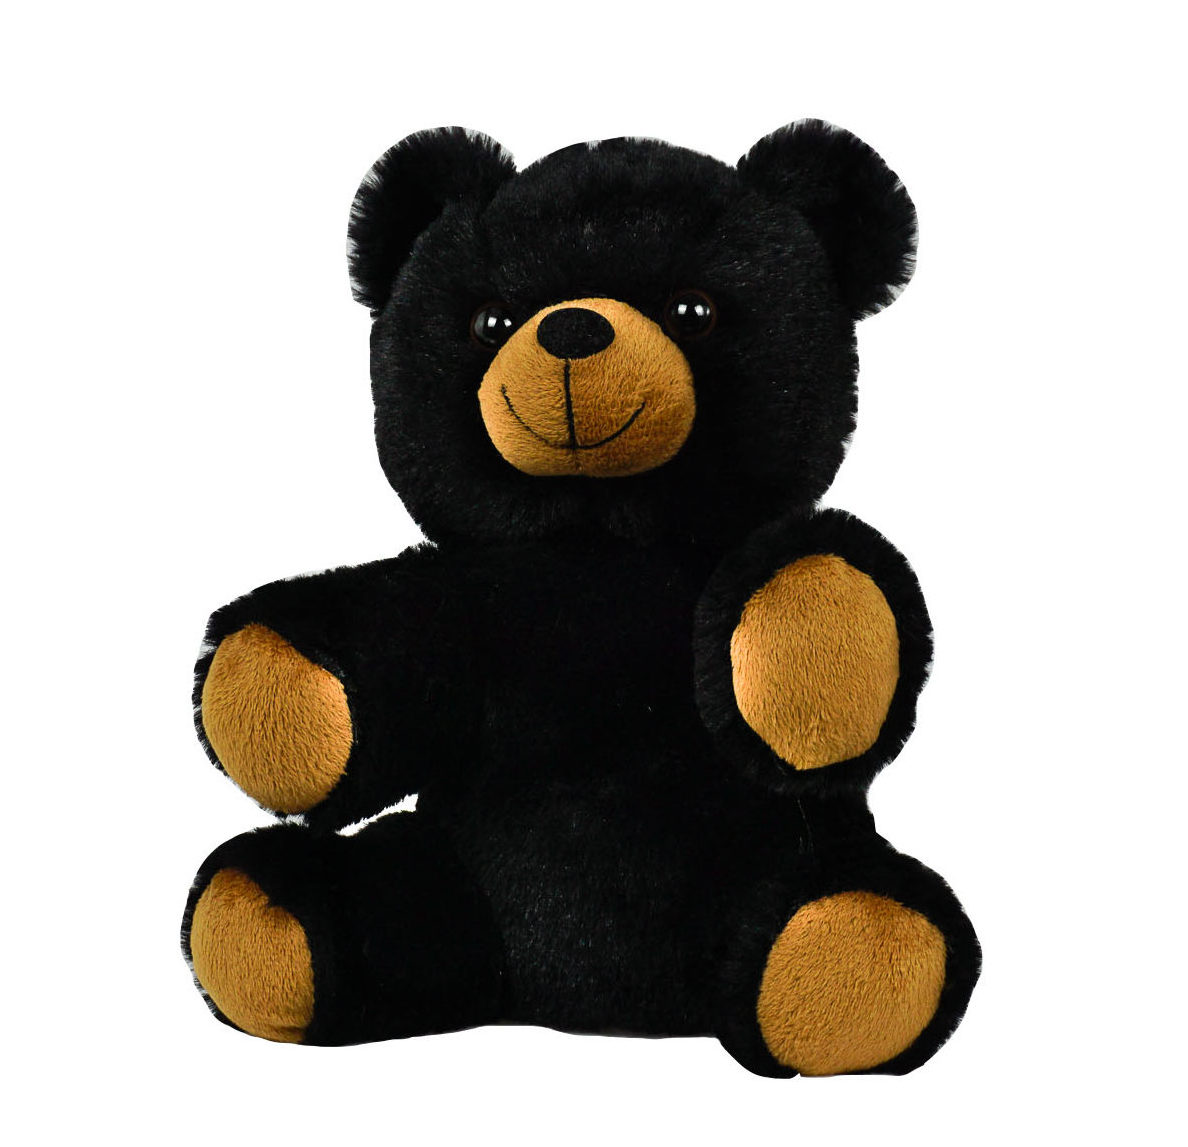 8 inch teddy bear